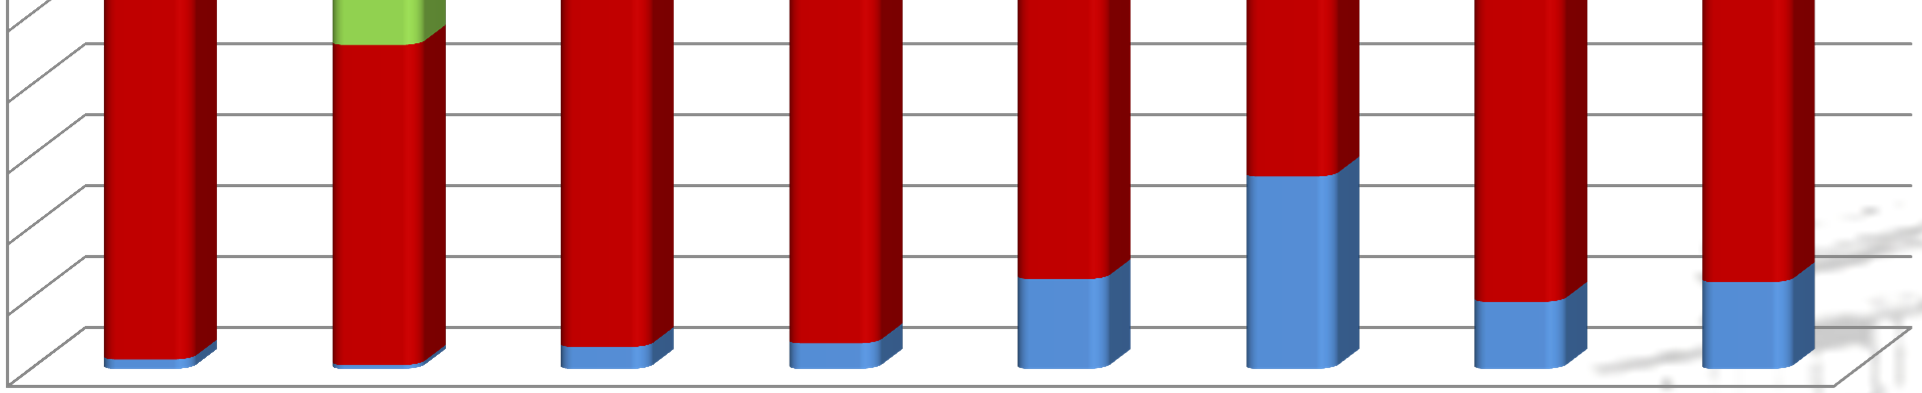 Zatrudnienie w KSC wg wieku wg grup stanowisk Wykres 14. Zatrudnienie w KSC wg wieku wg grup stanowisk (stan na dzień 31.12.2013 r.